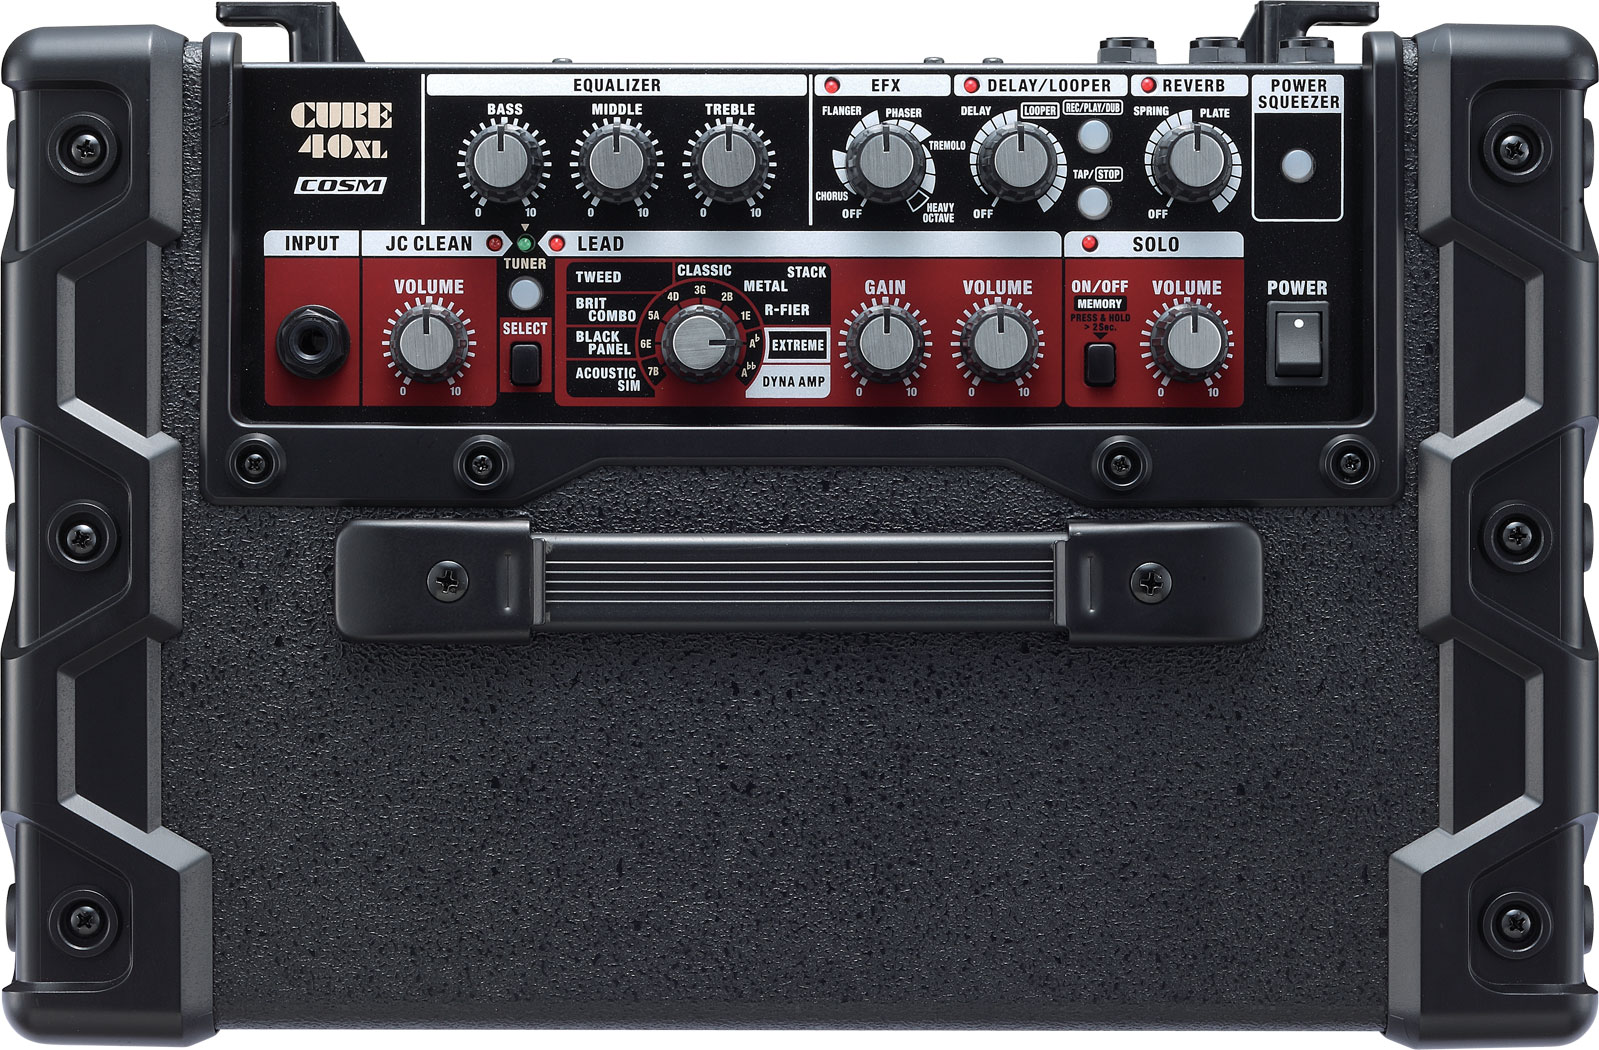 Roland Cube 40xl Guitar Amplifier